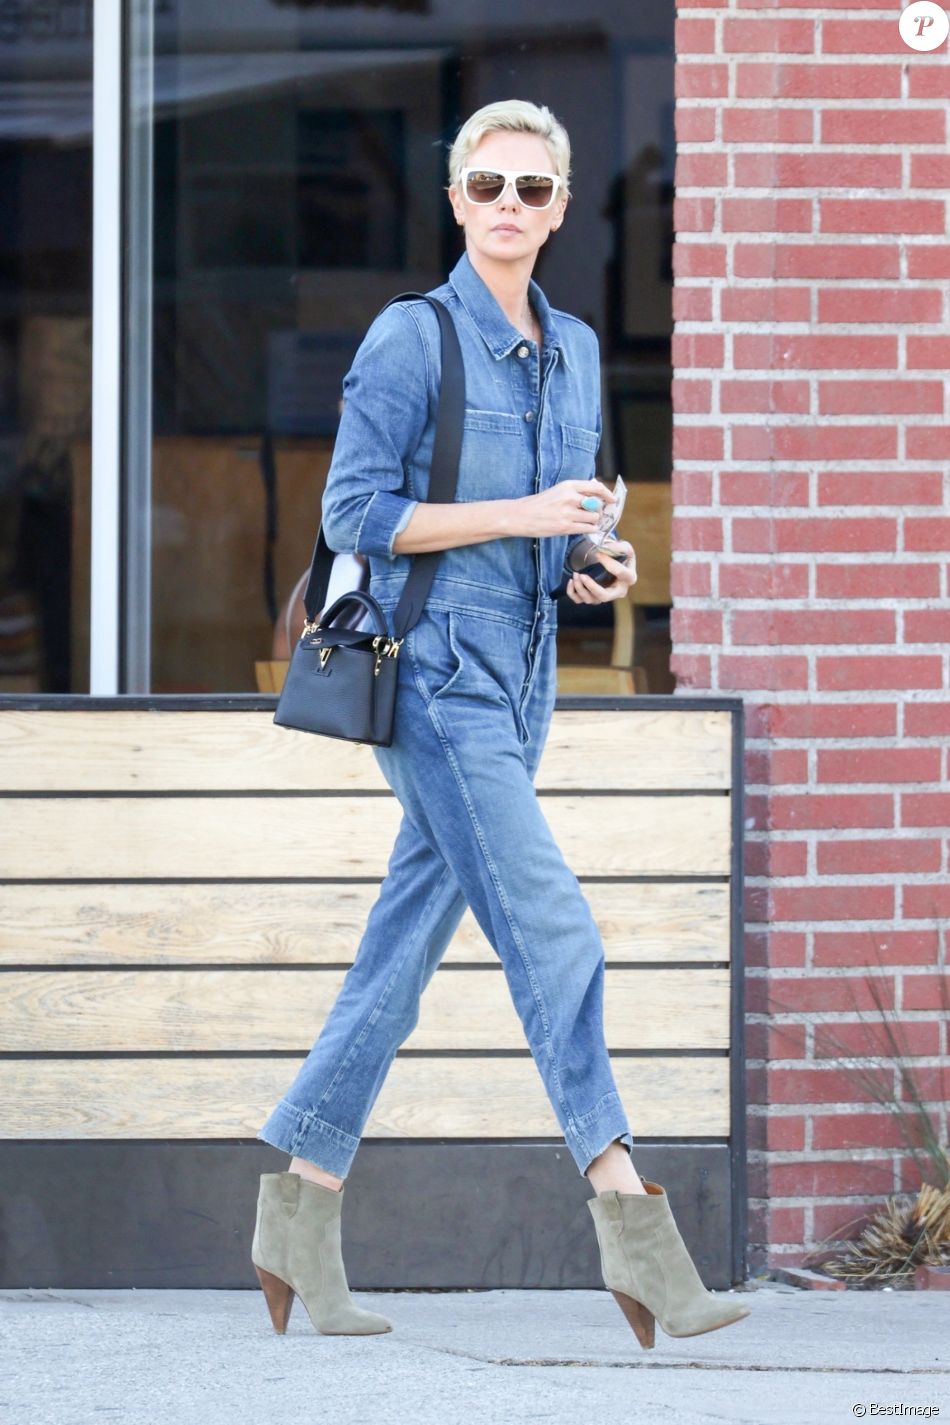 Exclusif - Charlize Theron porte une combinaison pantalon en jean et des bottines en daim pour aller déjeuner au restaurant Sugarfish à Los Angeles, le 3 mars 2020.